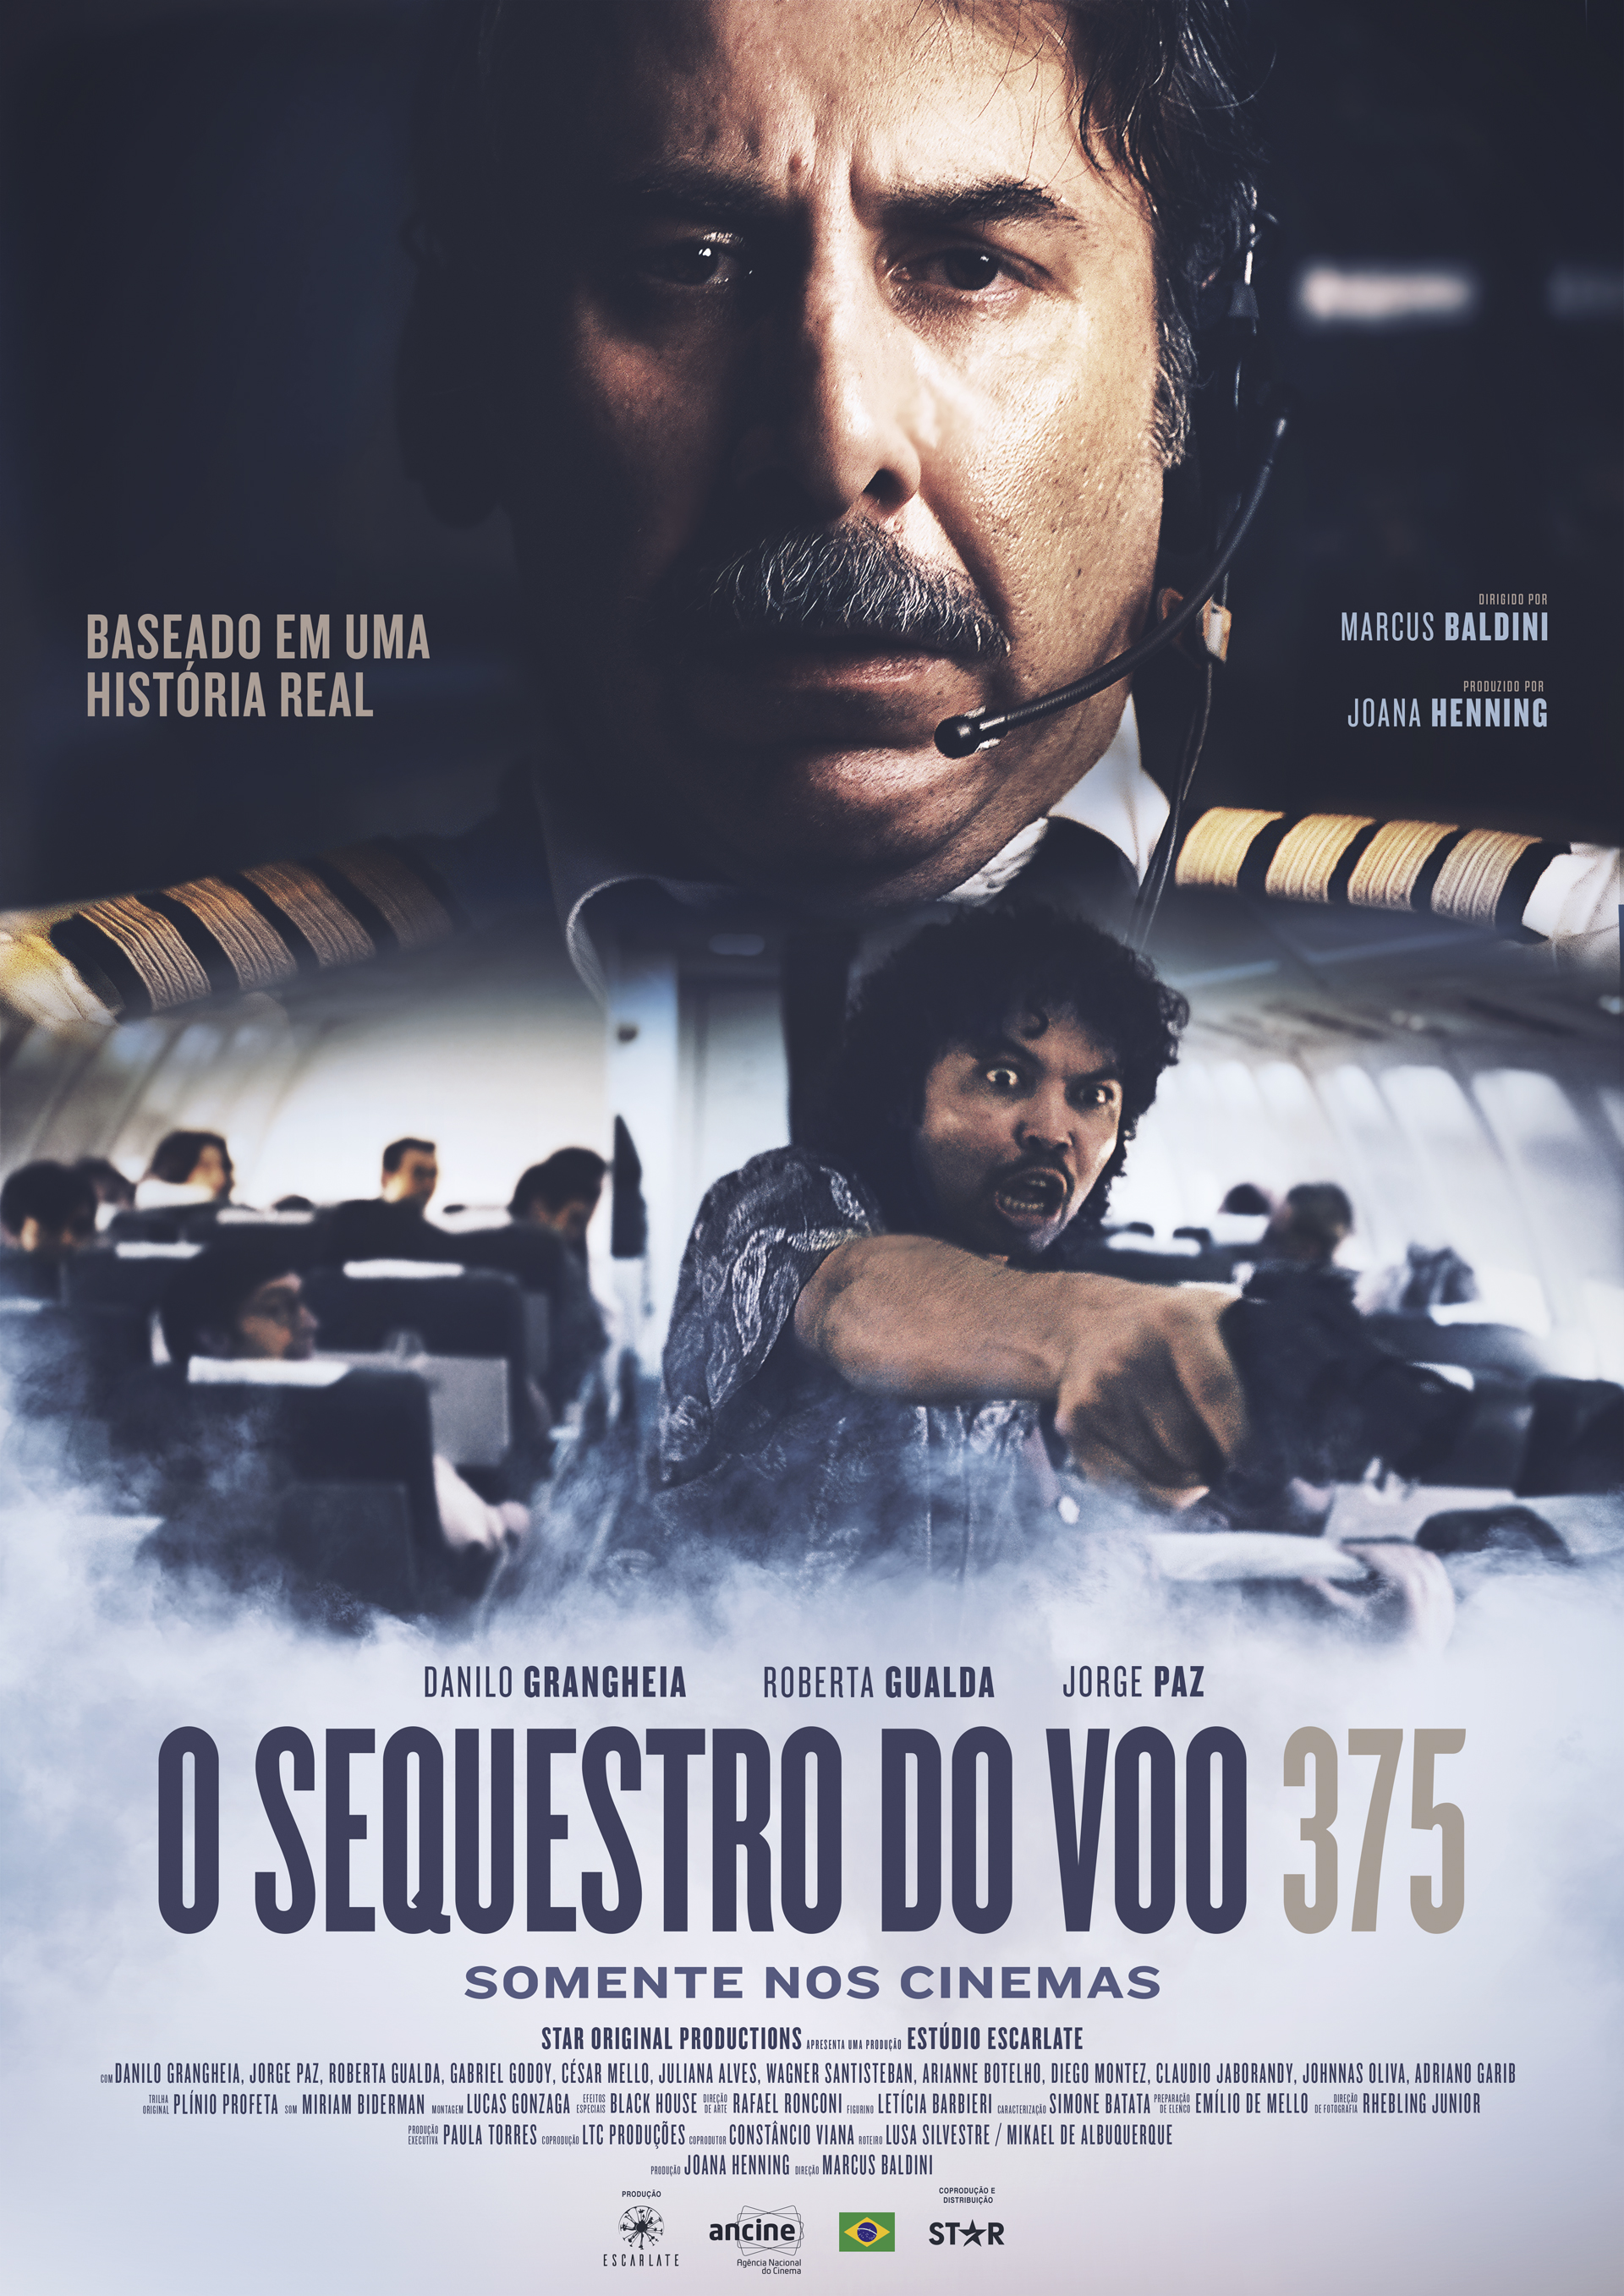 Super-herói brasileiro Overman ganha vida em filme com Caco